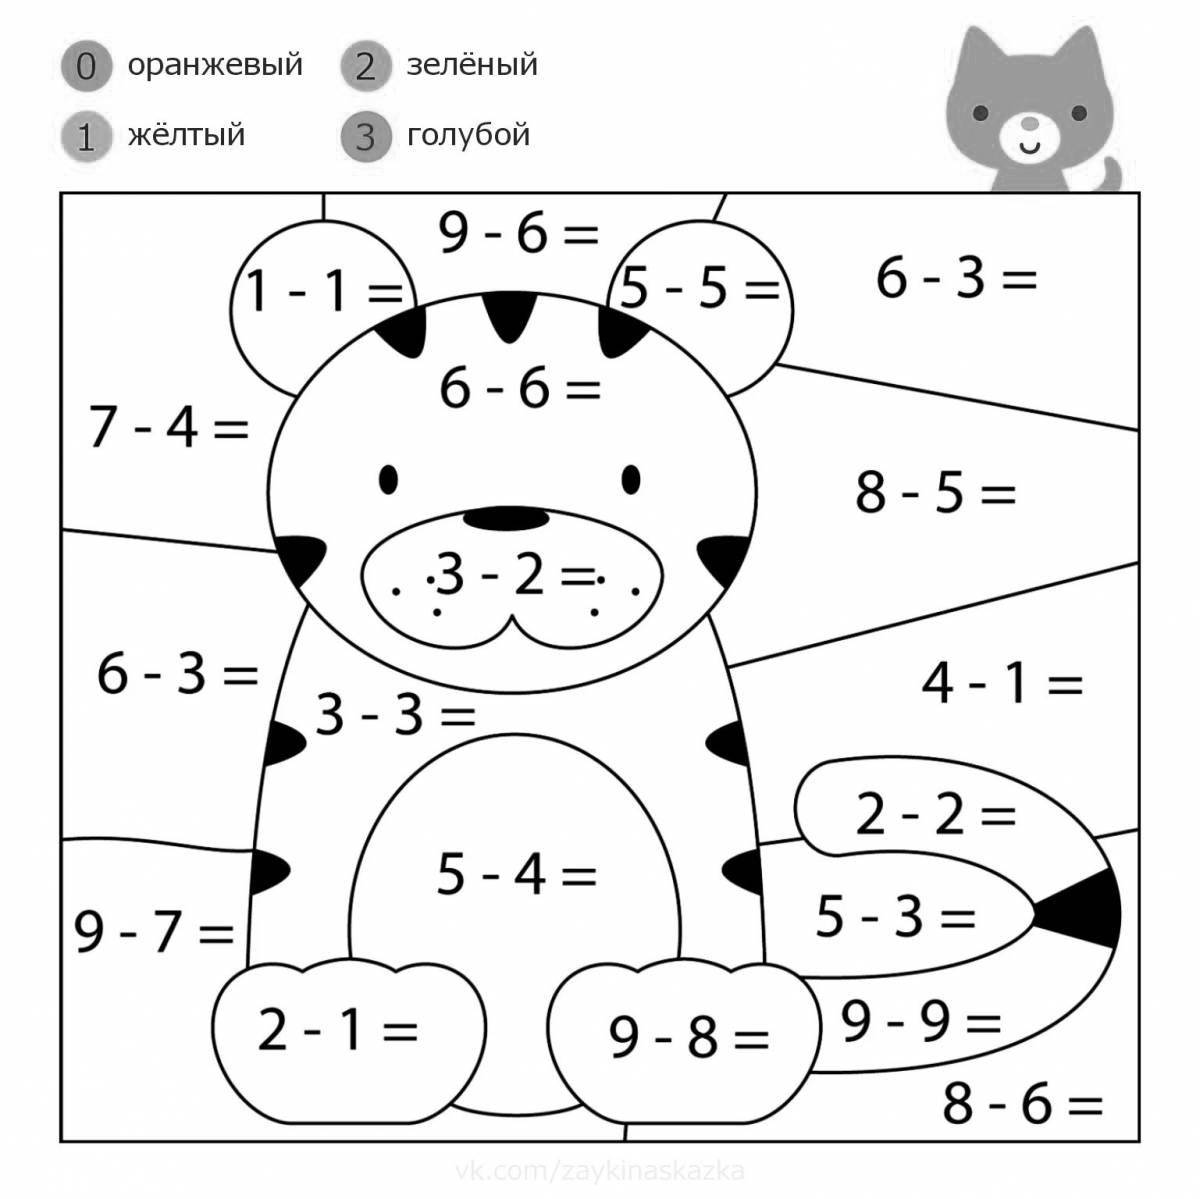 Интерактивная математическая раскраска для дошкольников 5-6 лет